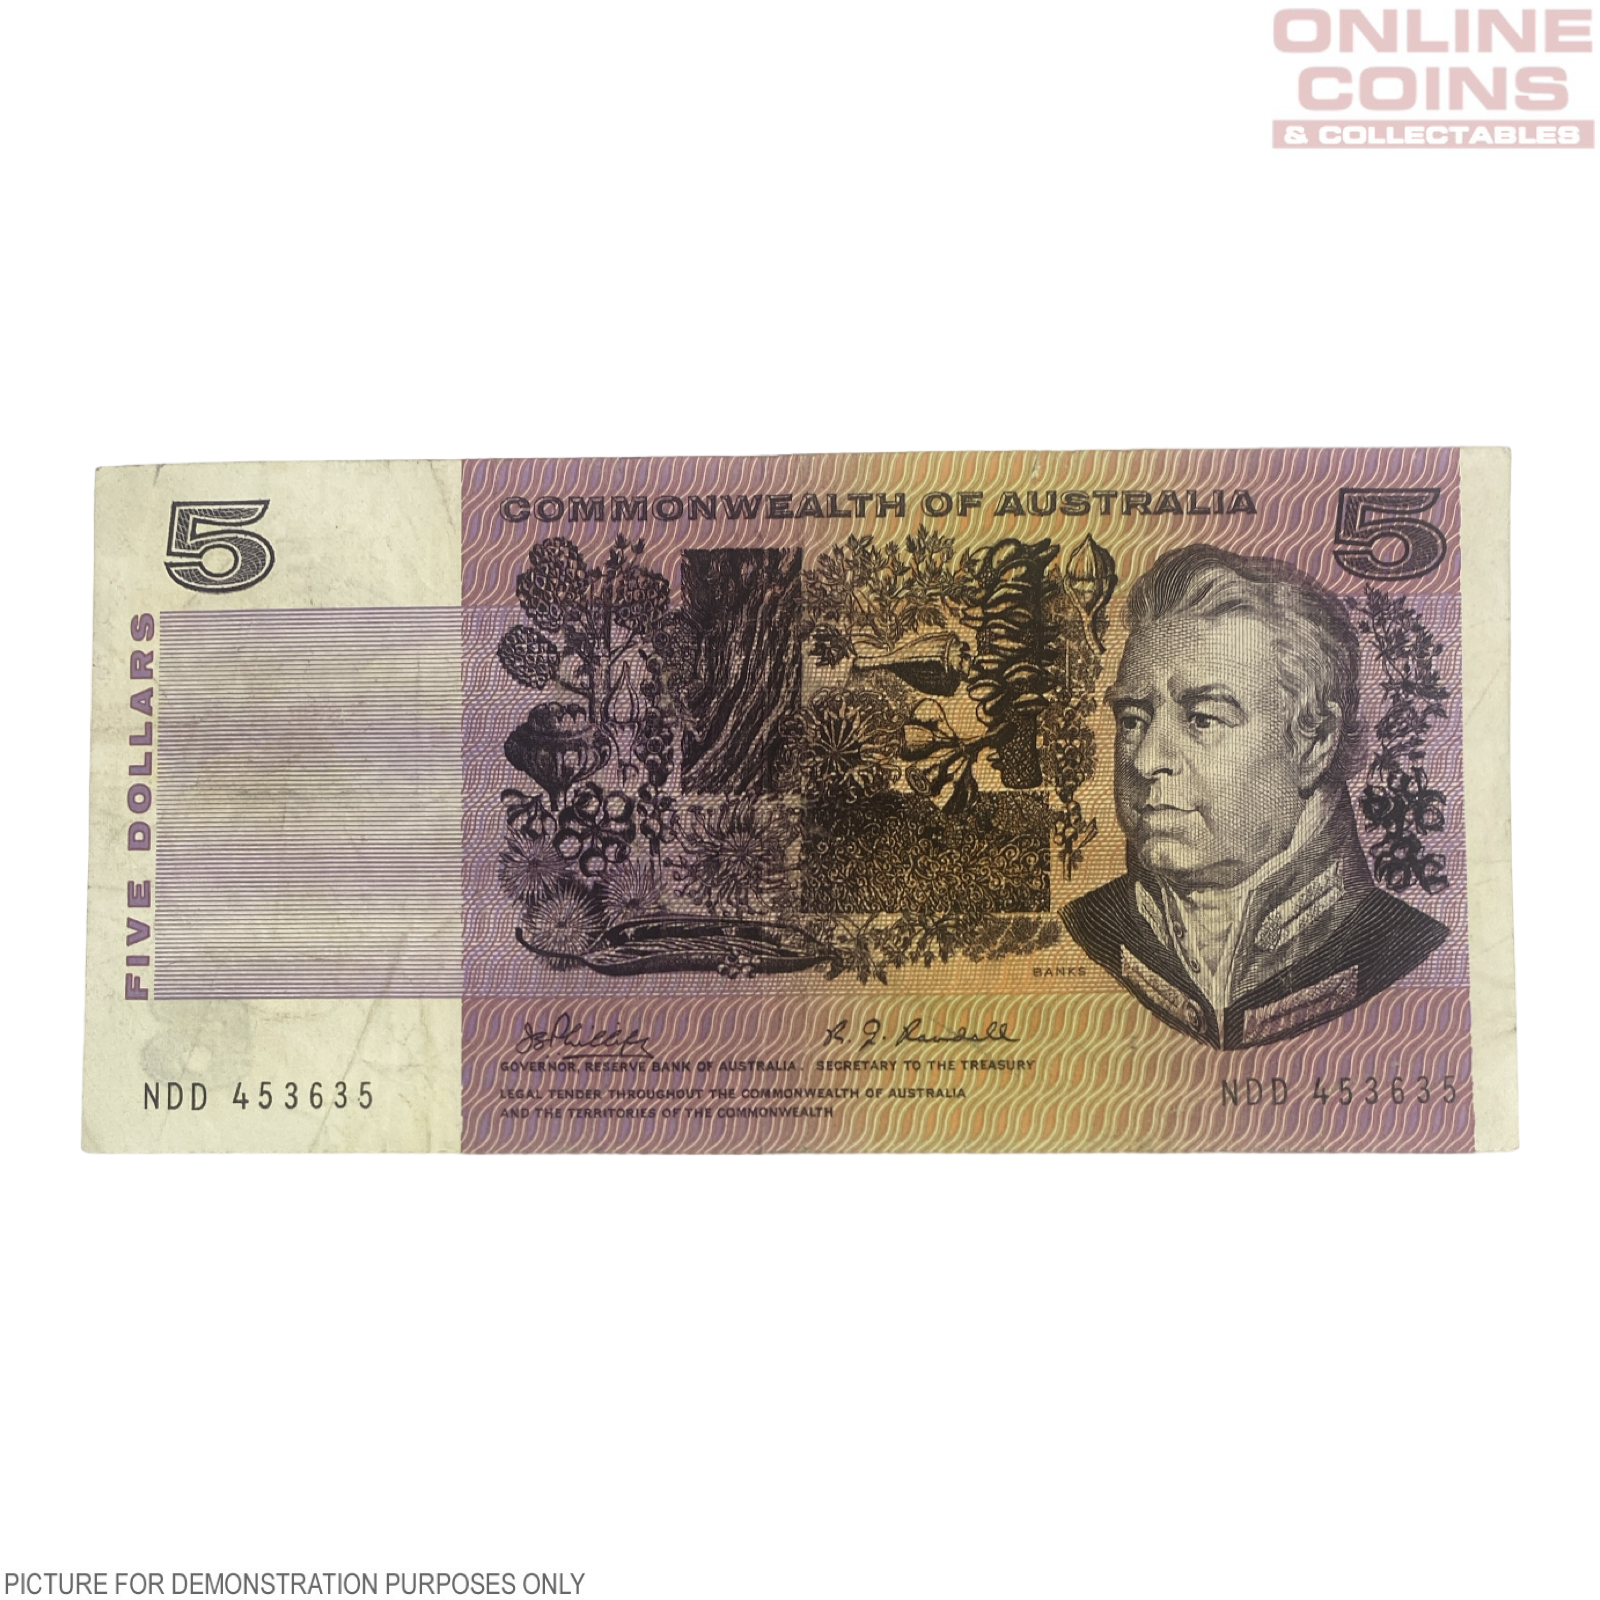 1969 Phillips Randall $5 Paper Note - Fine Grade